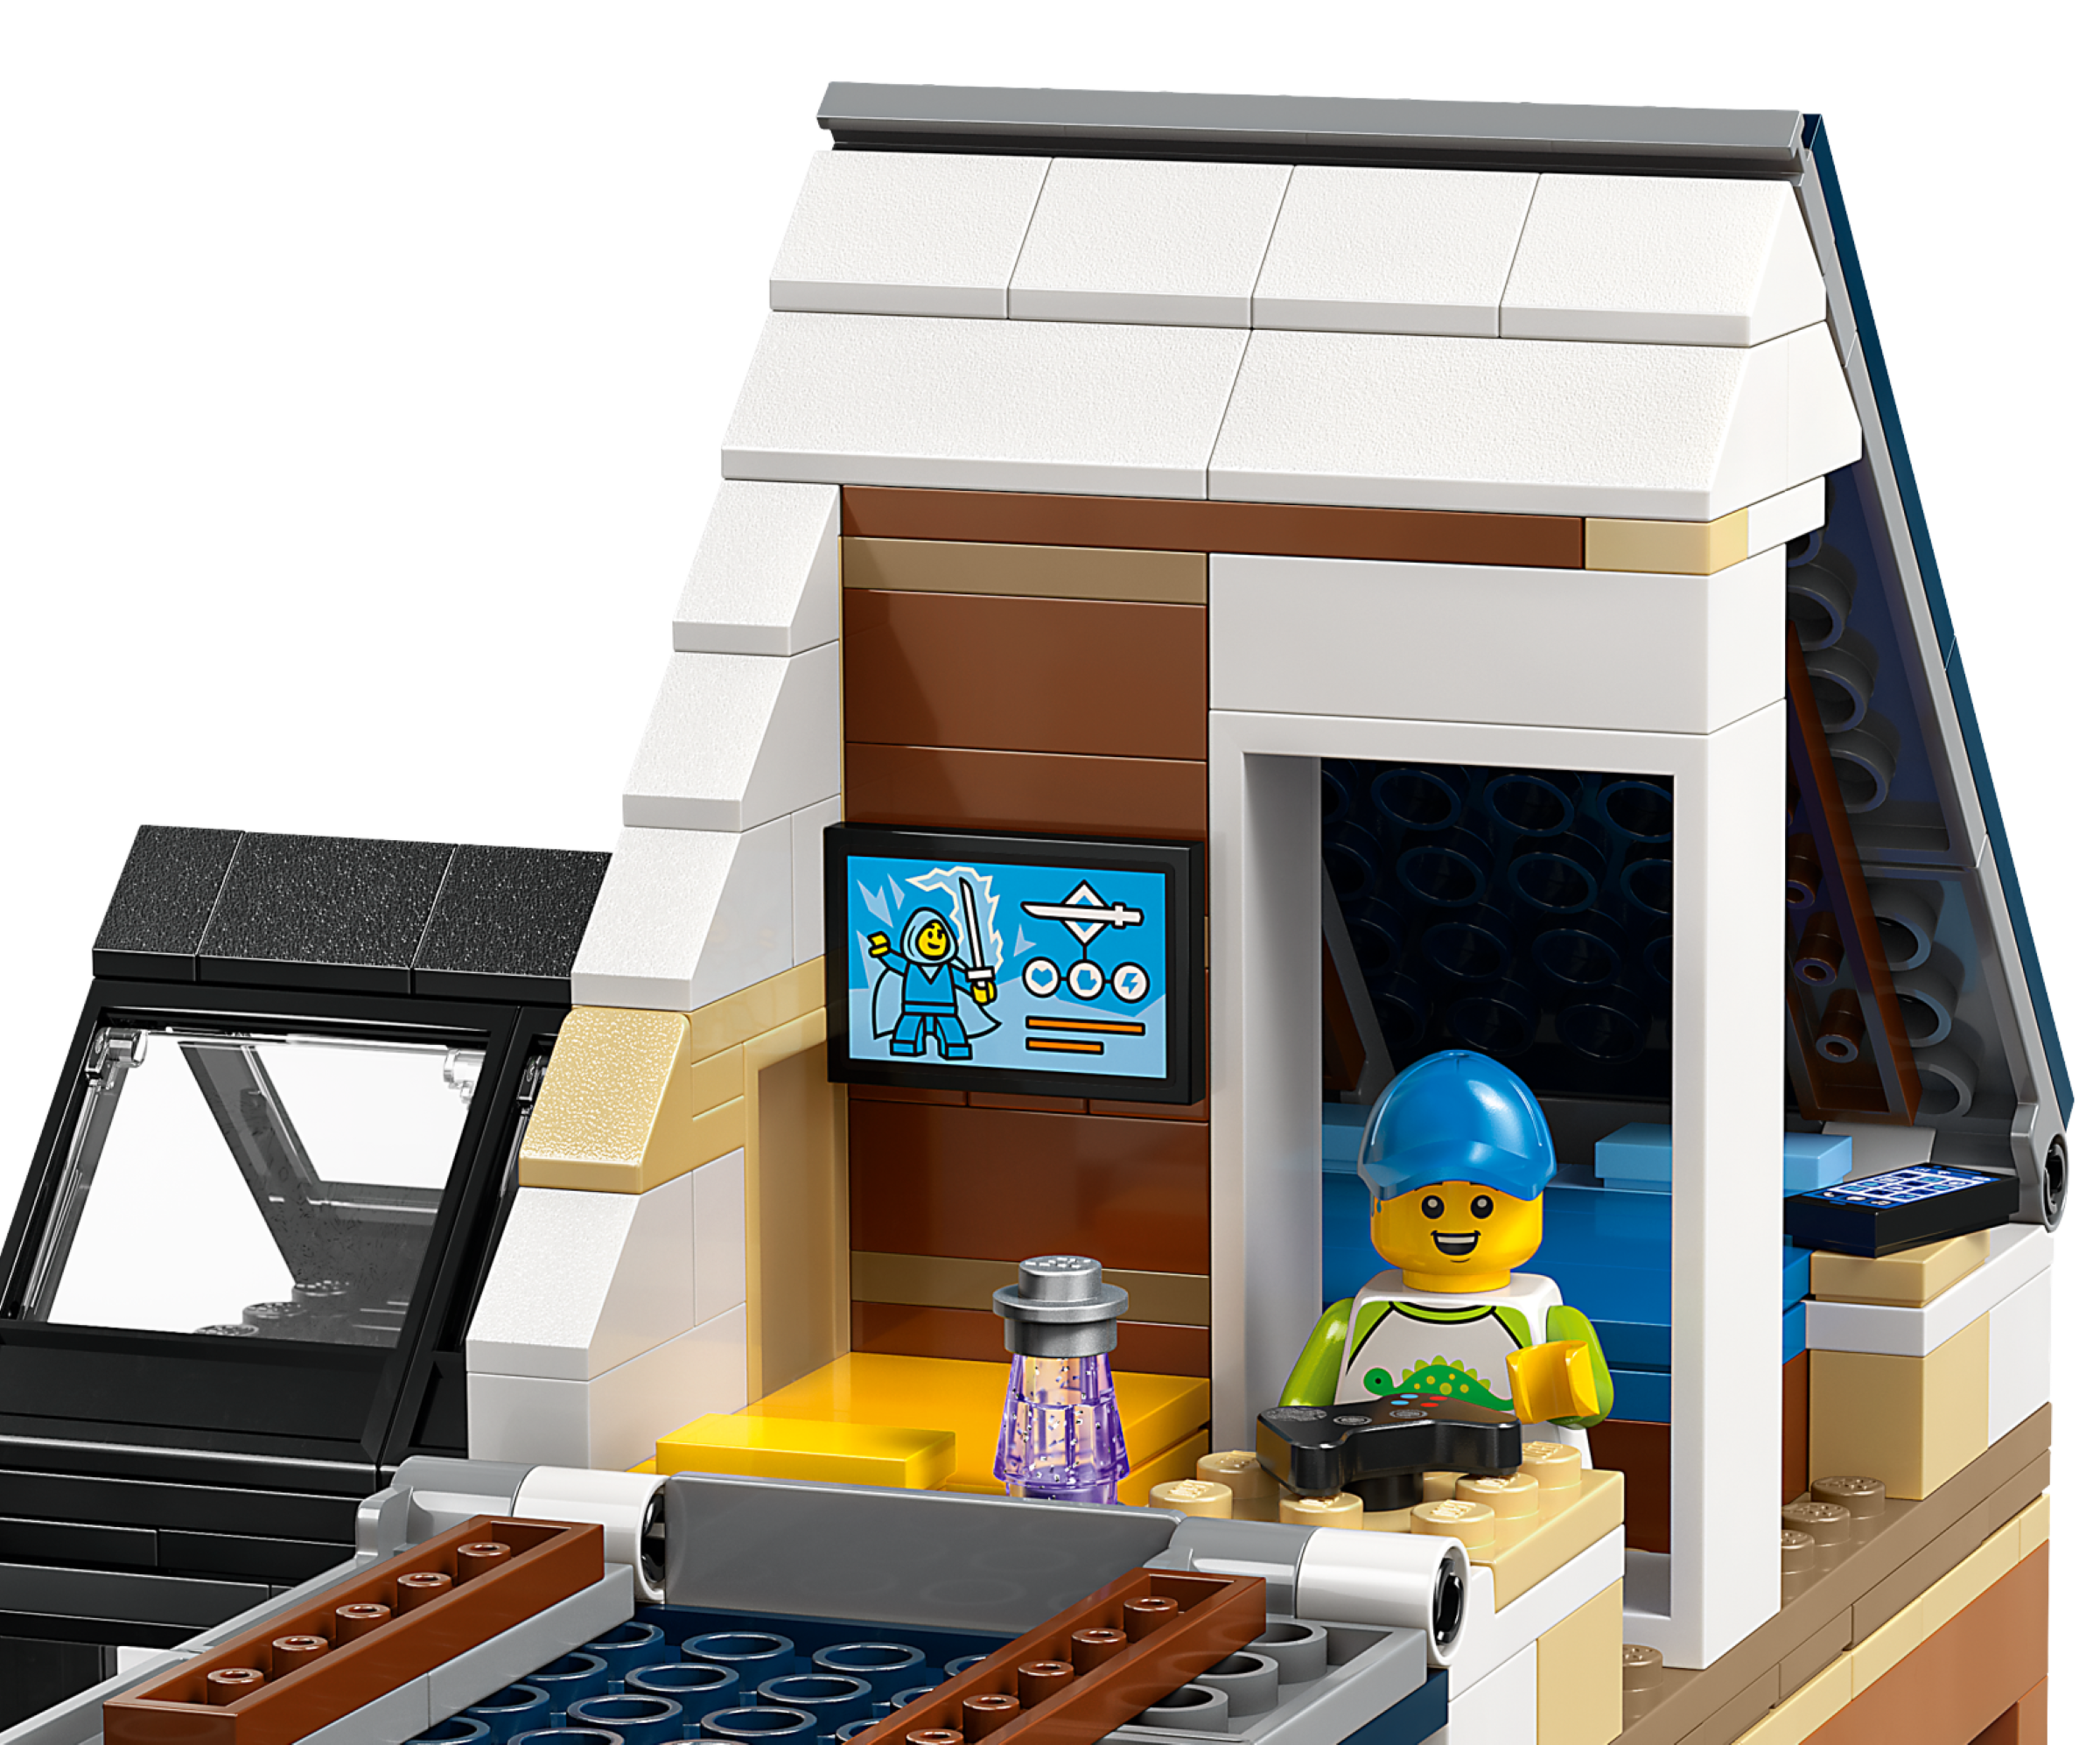 LEGO© City - La maison familiale et la voiture électrique - Brault &  Bouthillier